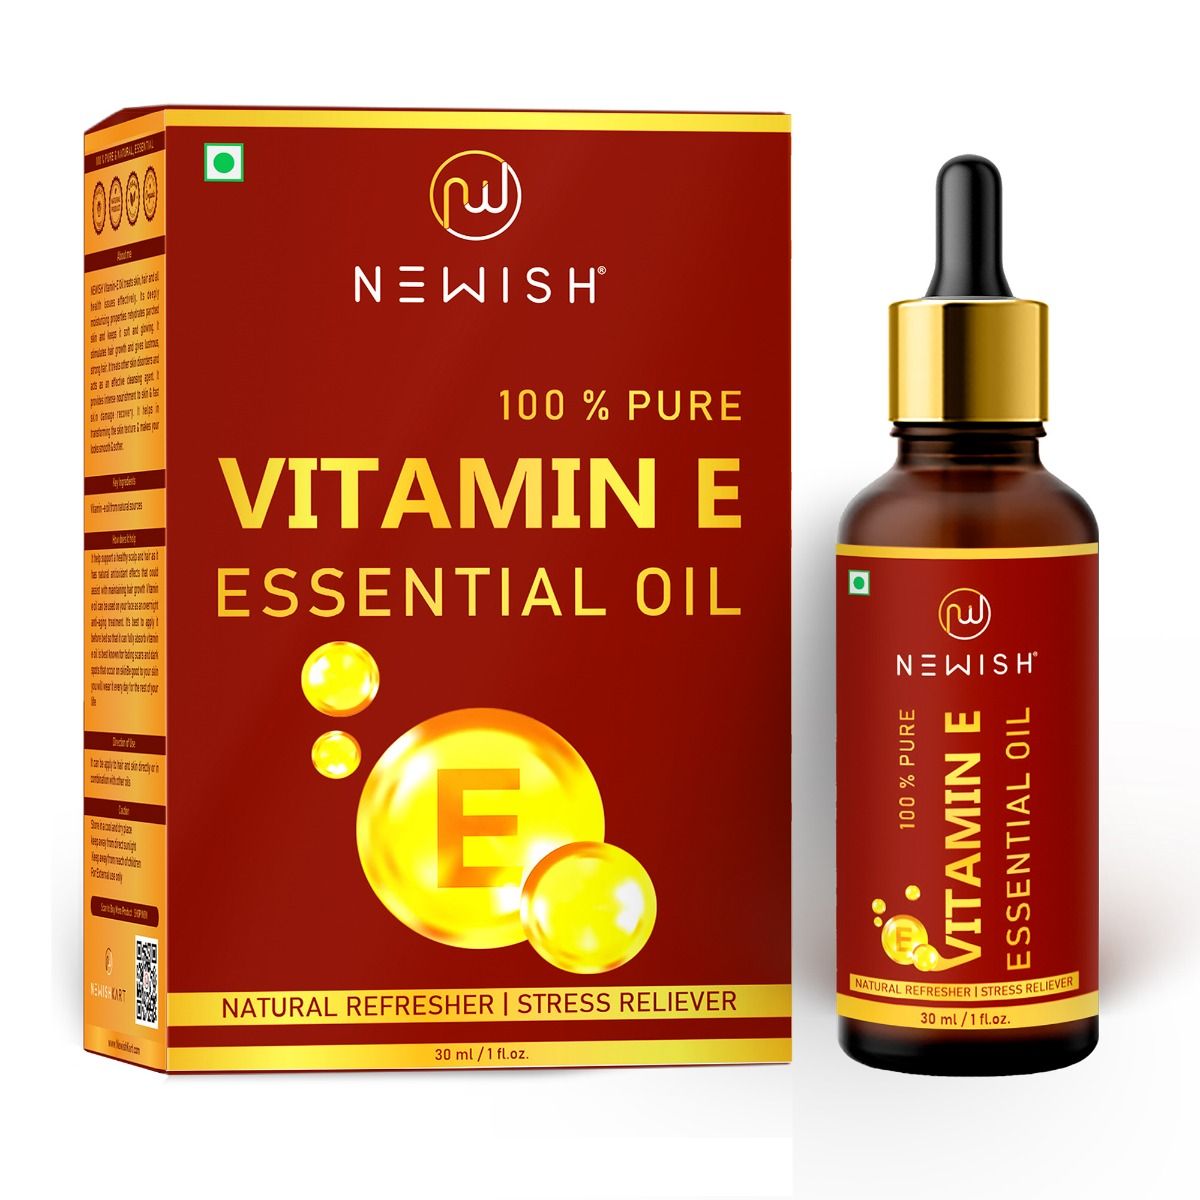 Buy Newish 100% Pure Vitamin E Essential Oil, 30 ml Online